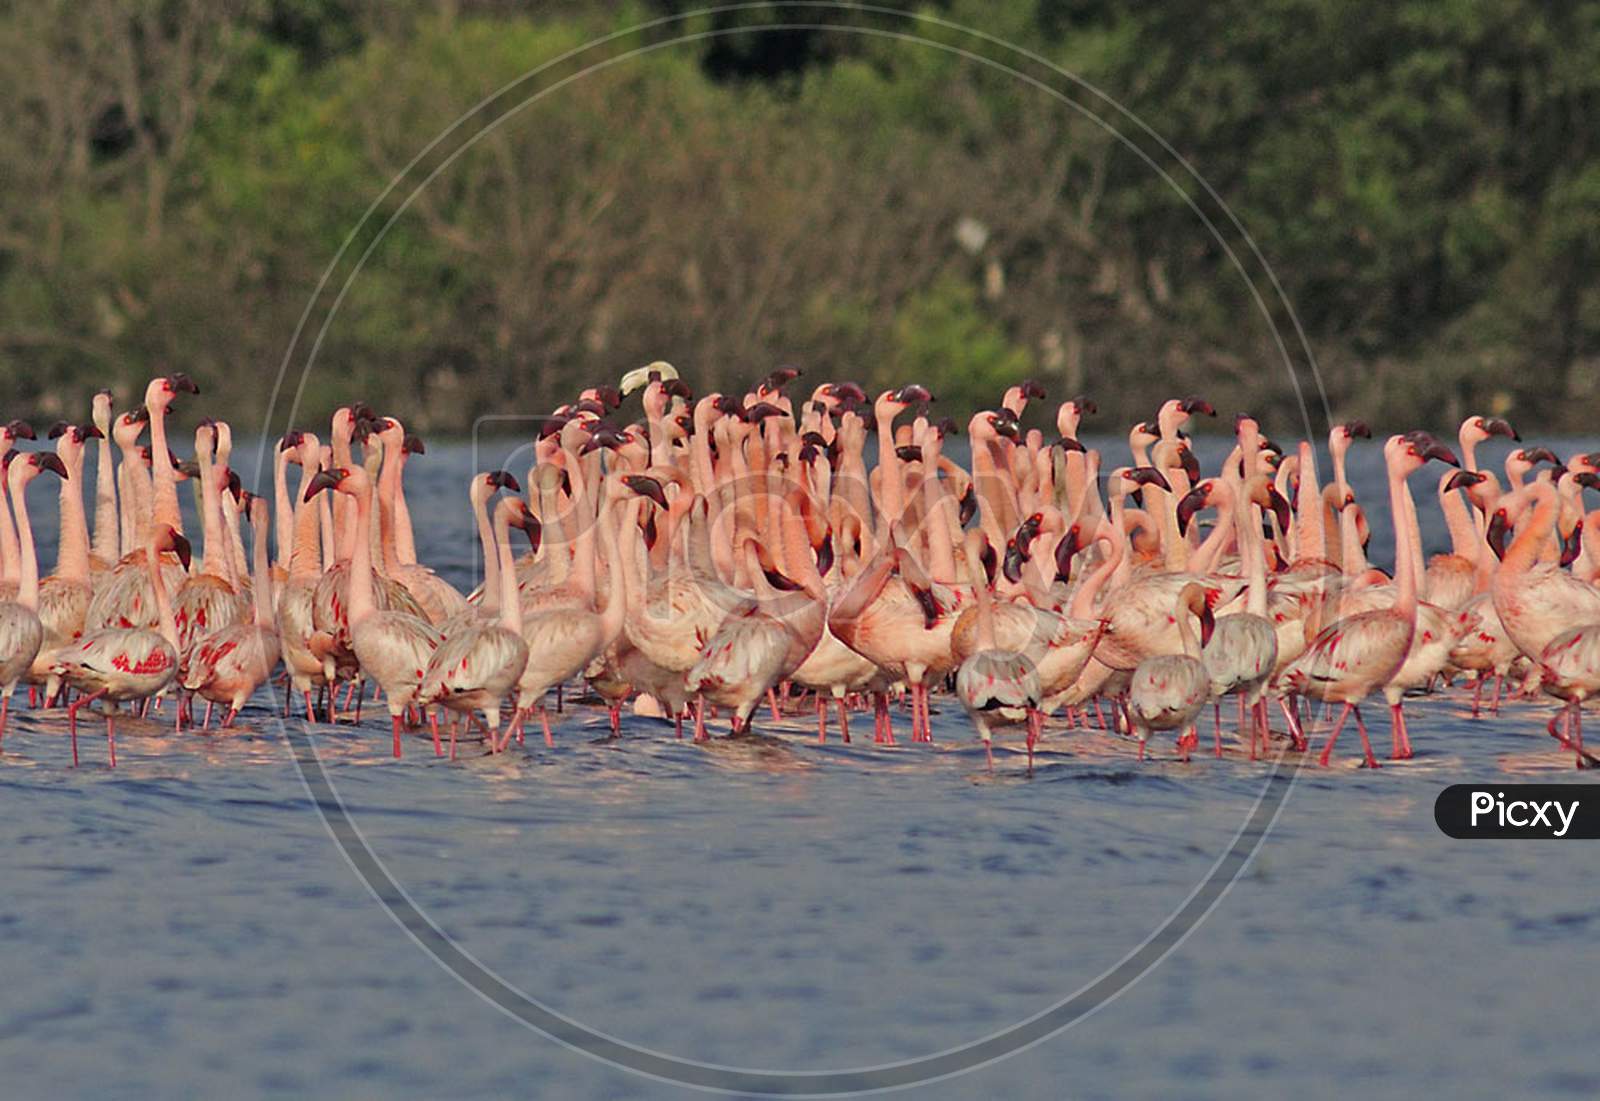 Lesser Flamingo courtship dance